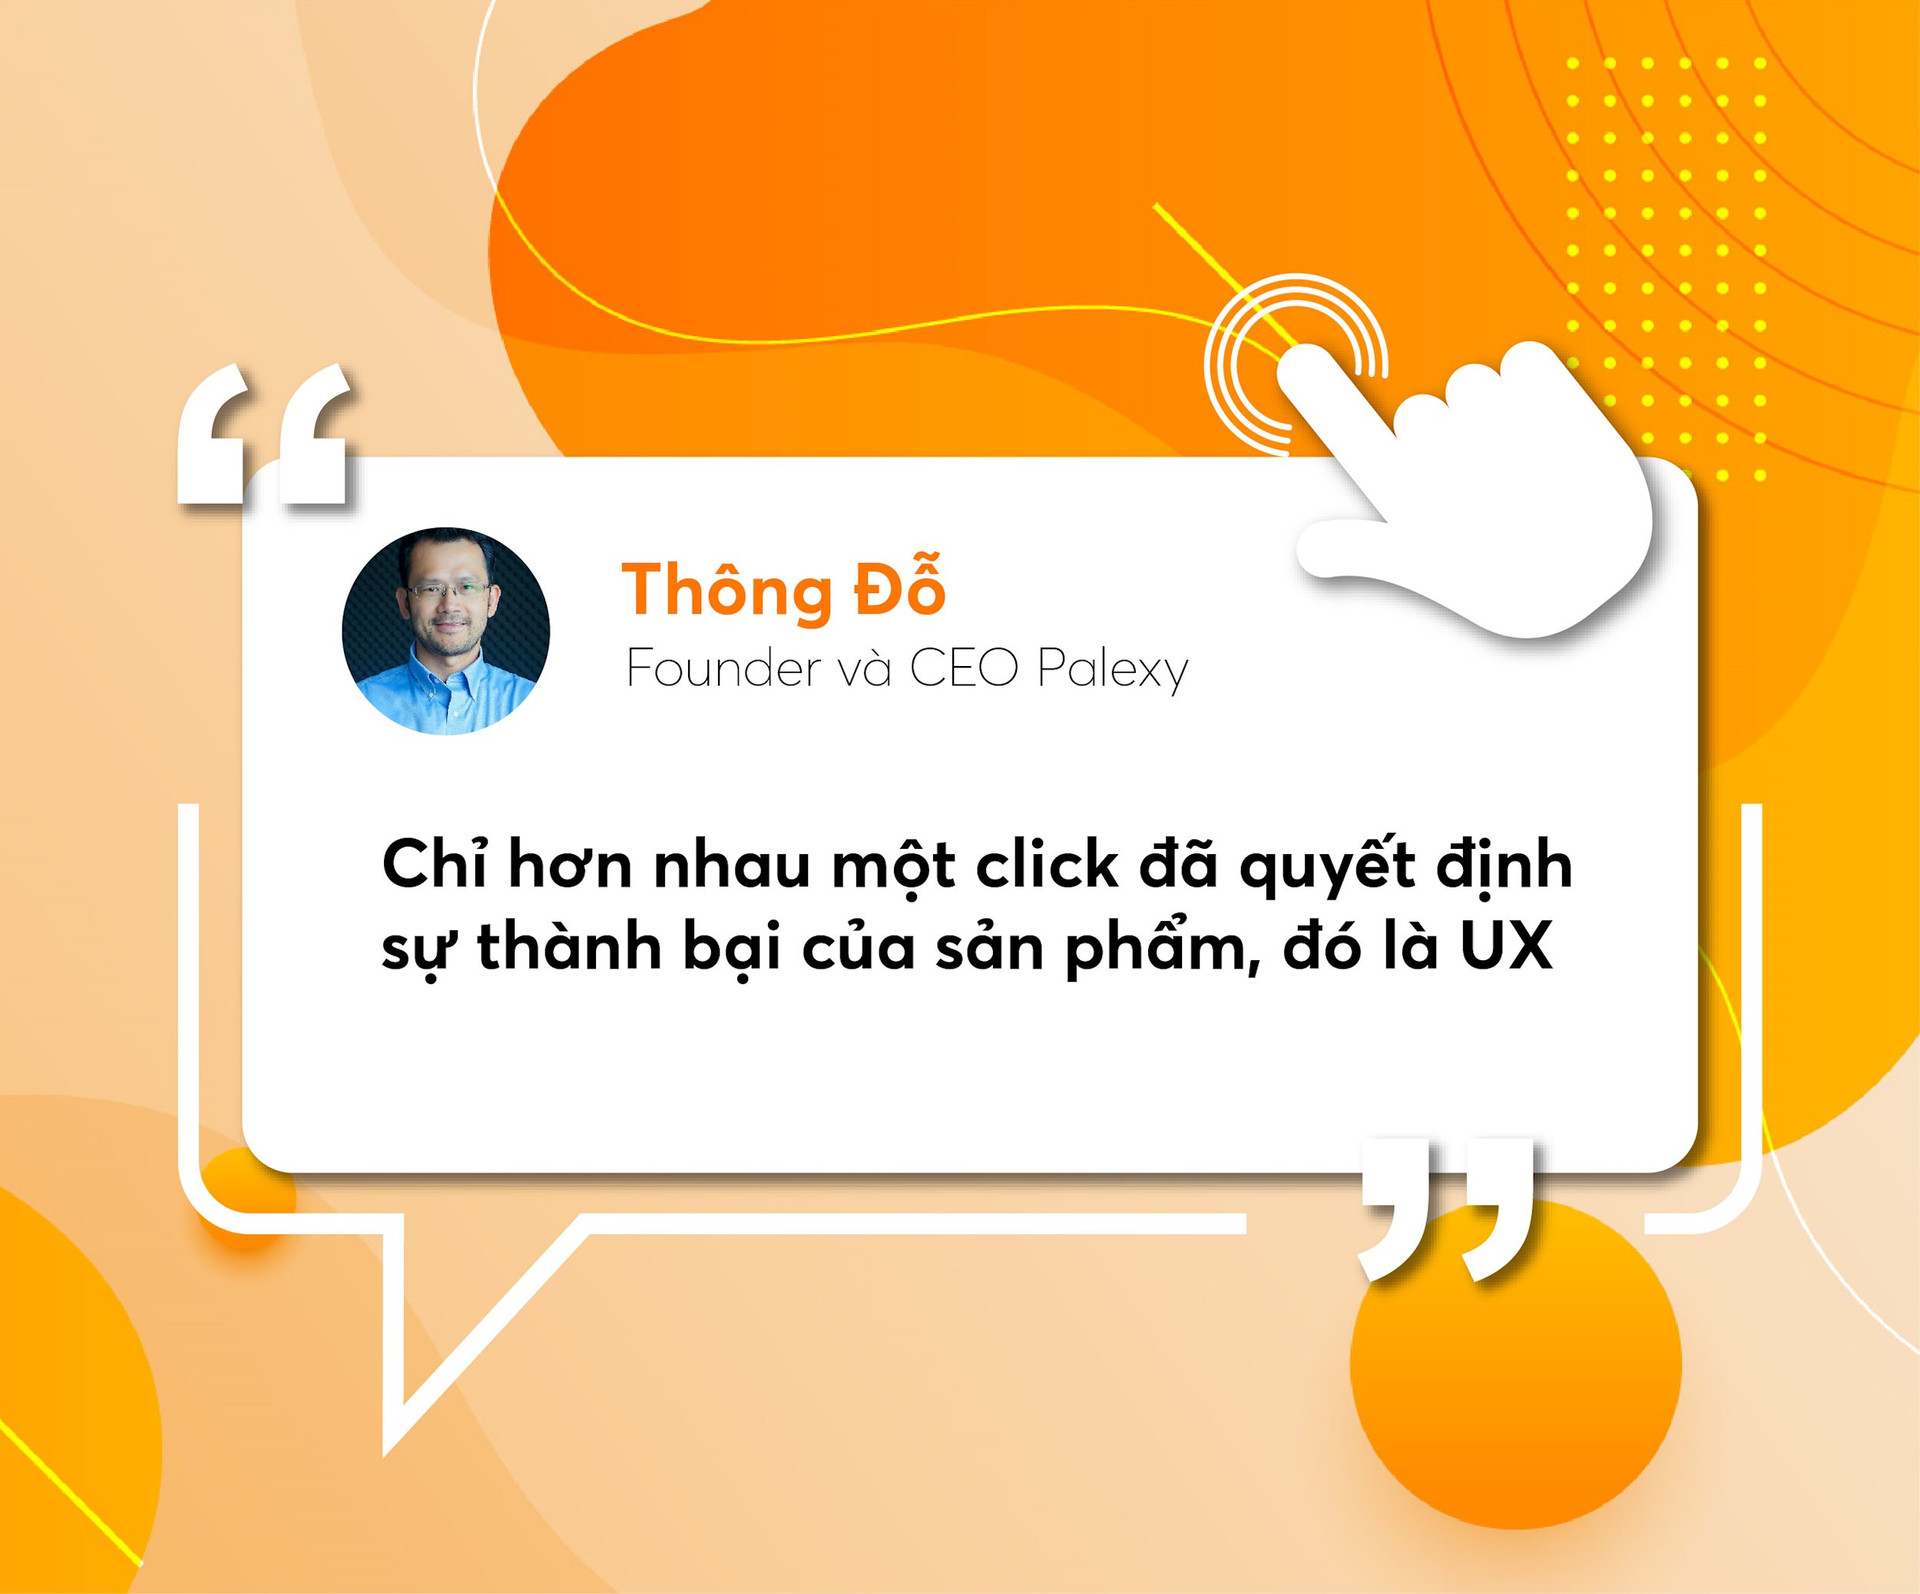 Tiến sĩ AI đưa công nghệ “mắt thần” vào ngành bán lẻ, tích hợp trong 2/3 chuỗi lớn nhất Việt Nam, mở rộng ra 6 nước Đông Nam Á - Ảnh 4.